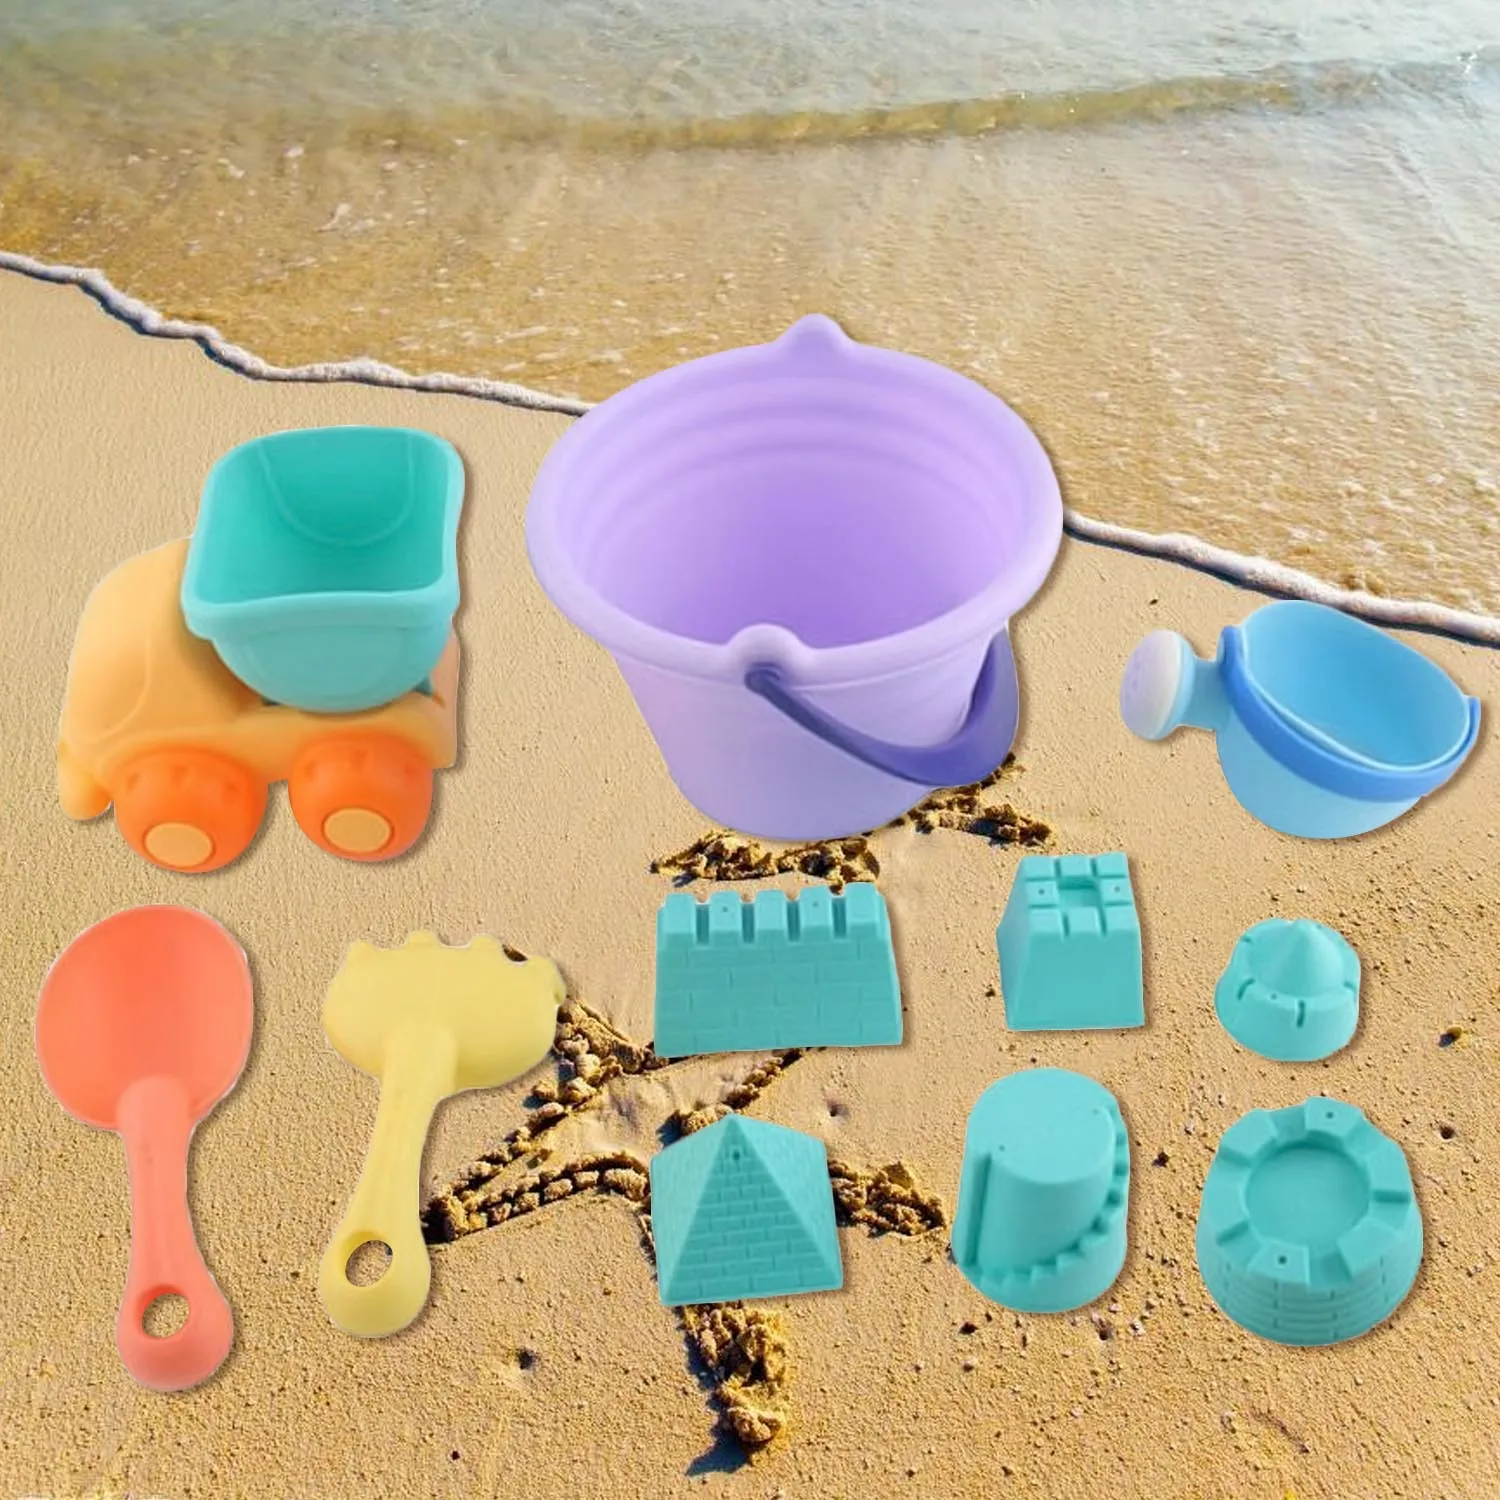 Besegad 11 шт Забавный игрушка для пляжа комплект дети ролевая игра Playset включая лопаты грабли, ведро песок модели ребенок пляж игрушки